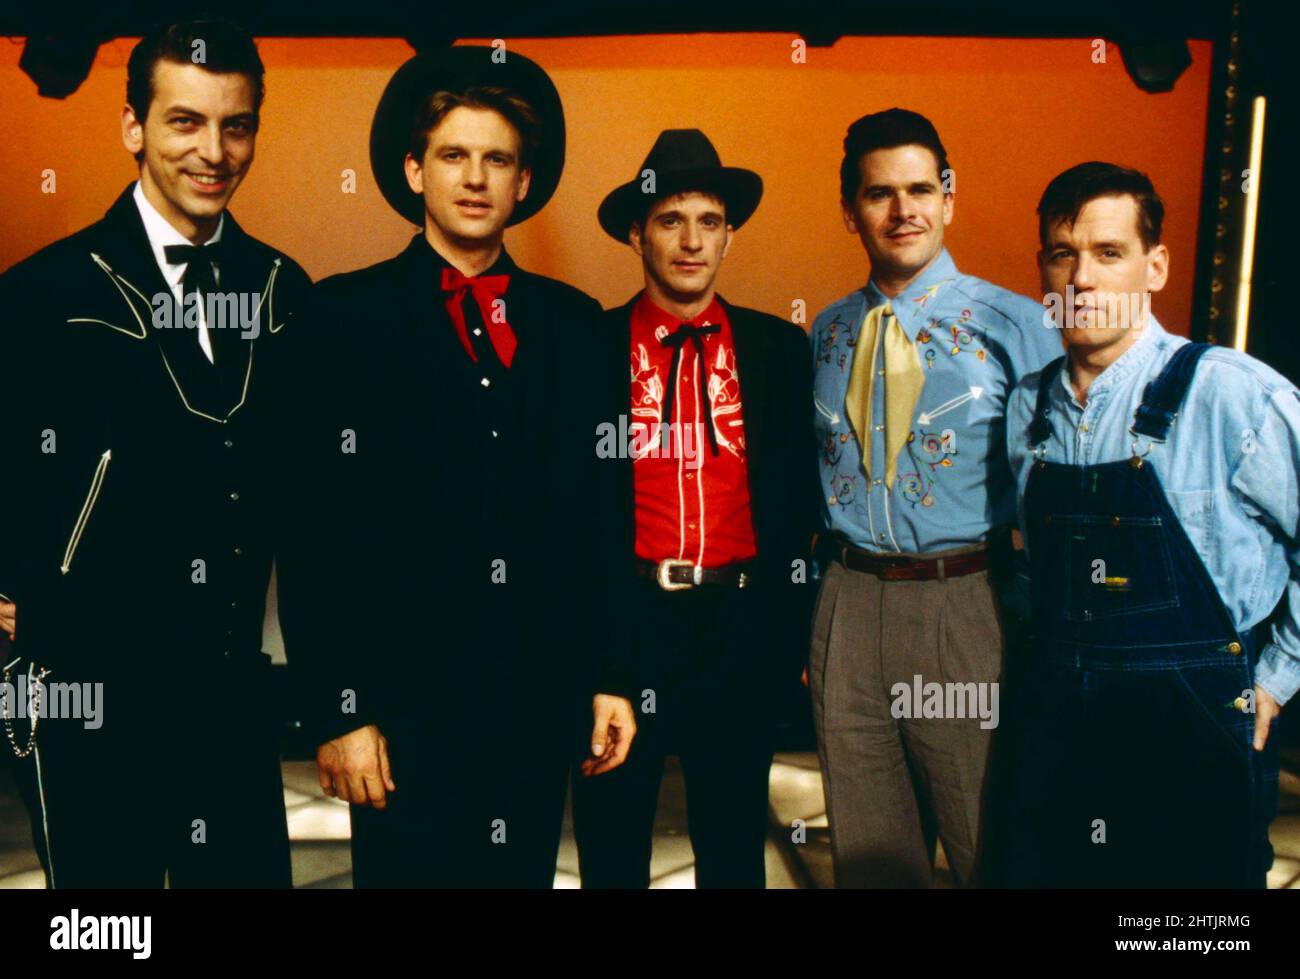 BR5-49, amerikanische Country-Band, bei einem Auftritt in der Show 'Power Night - Eine amerikanische Nacht', Deutschland 1996. Stock Photo